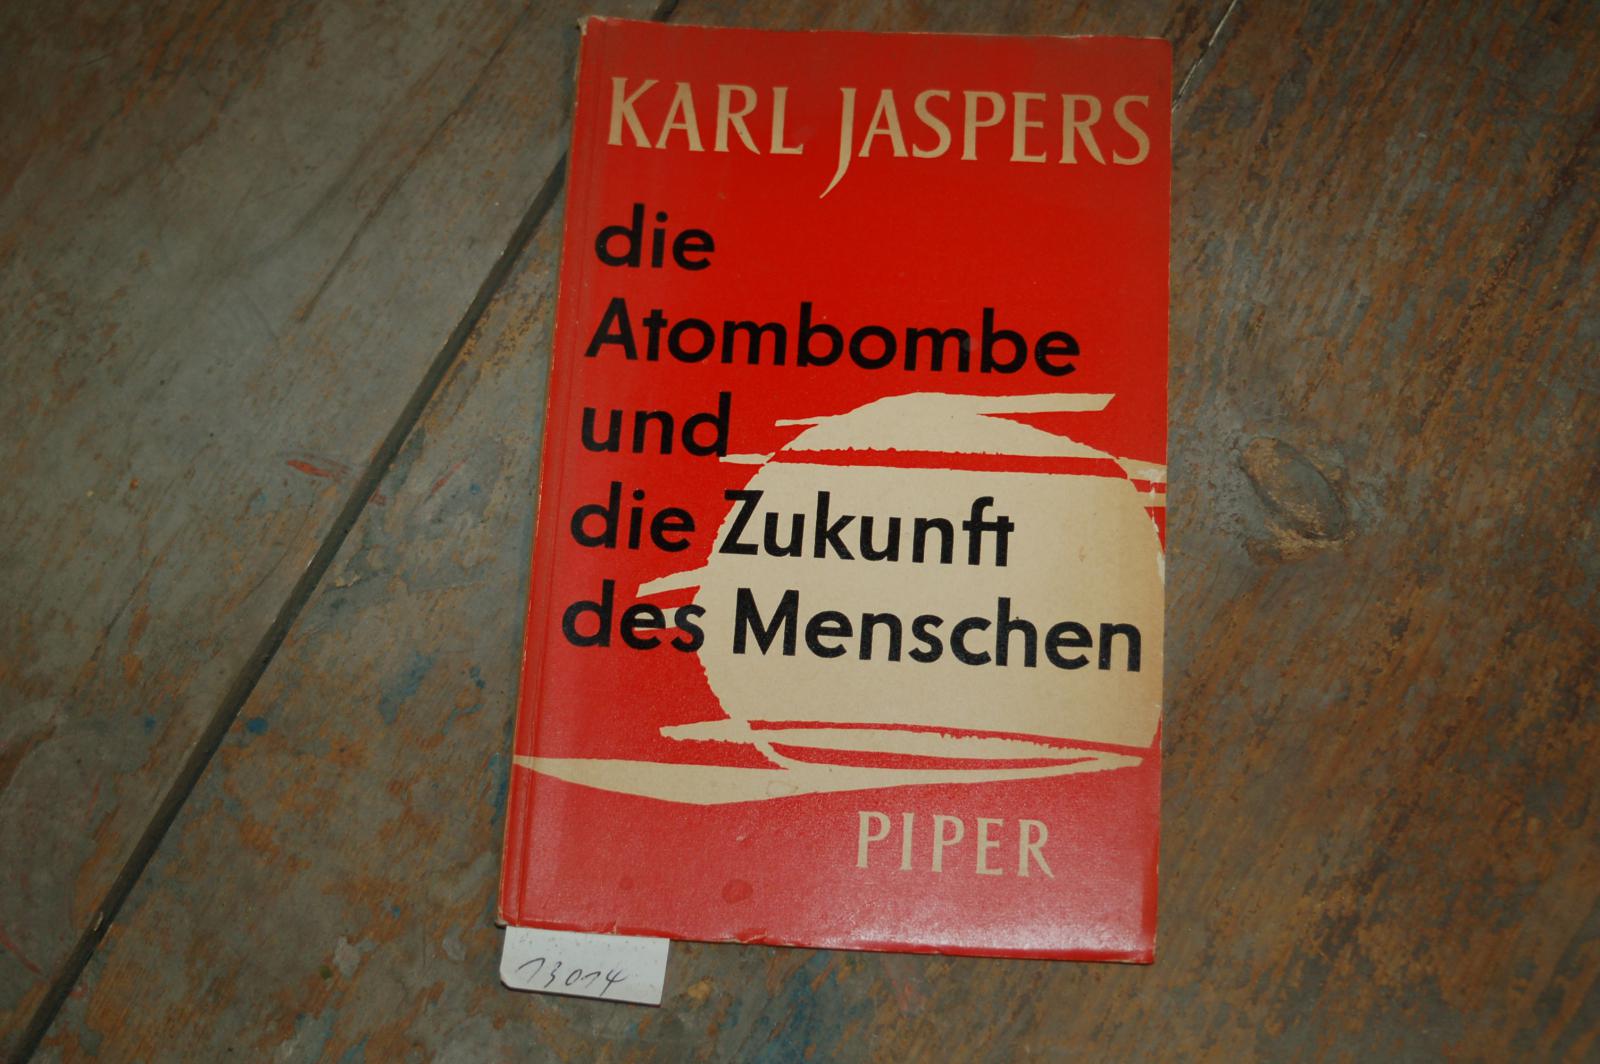 Jaspers karl  Die Atombombe und die Zukunft des Menschen 